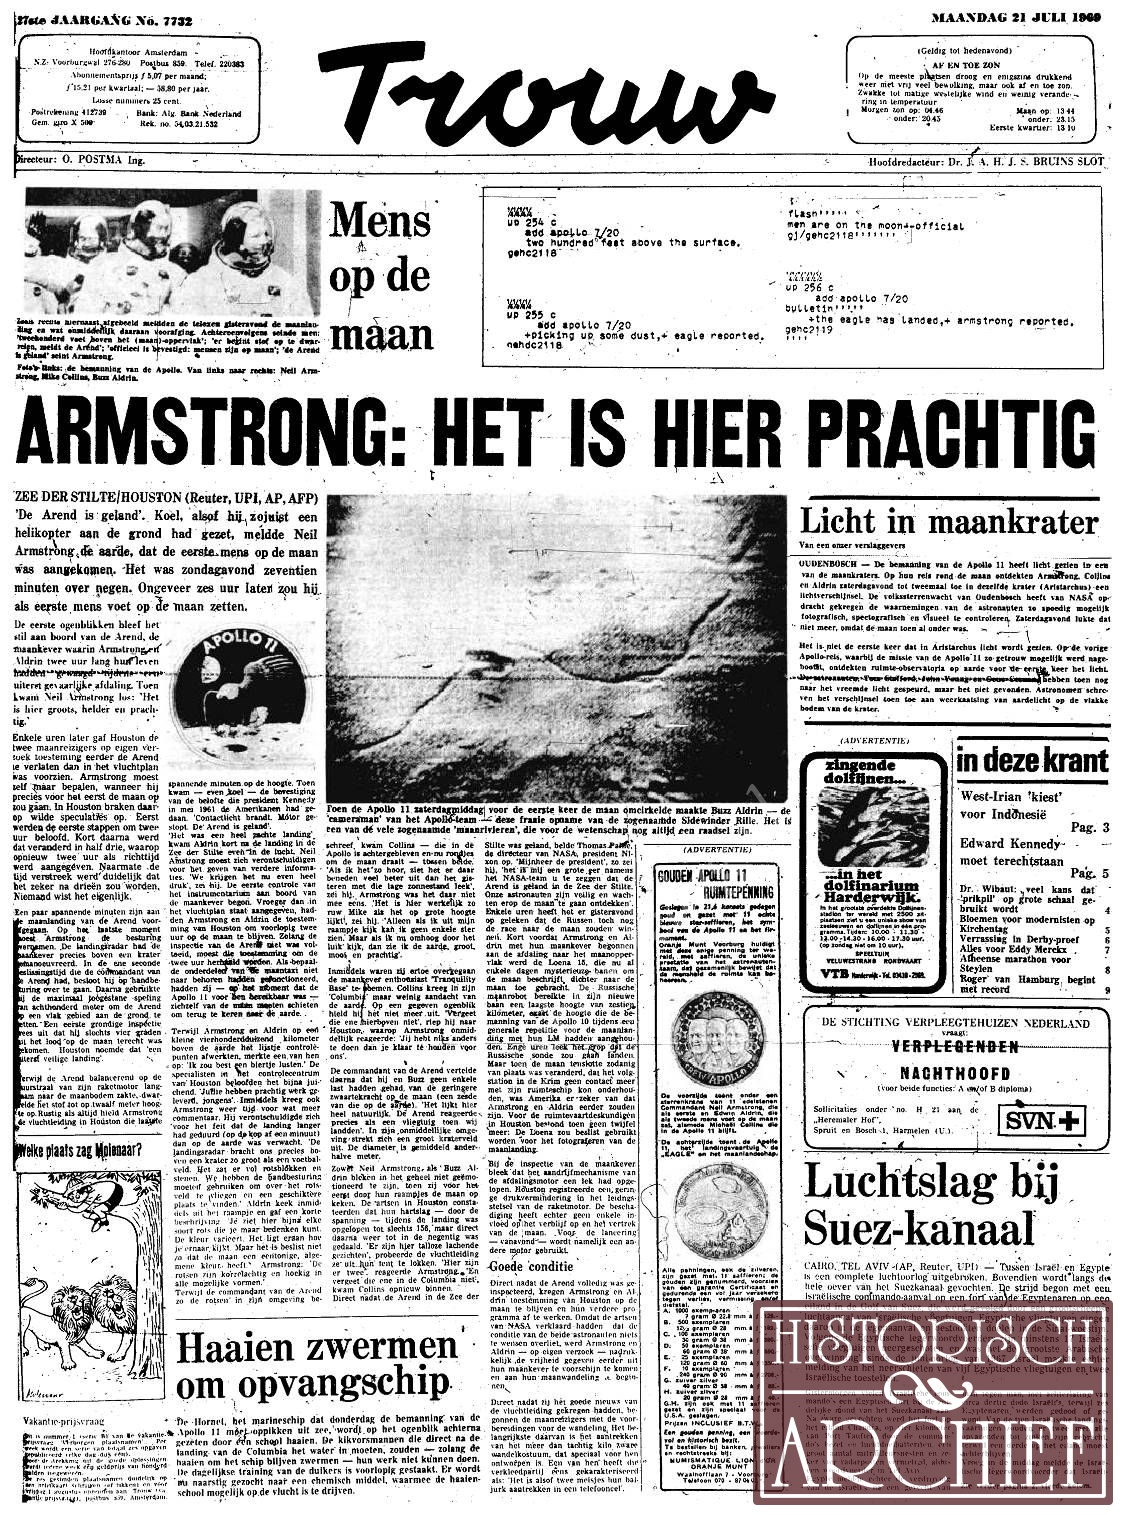 Neil Armstrong 45 jaar geleden als eerste mens op de maan